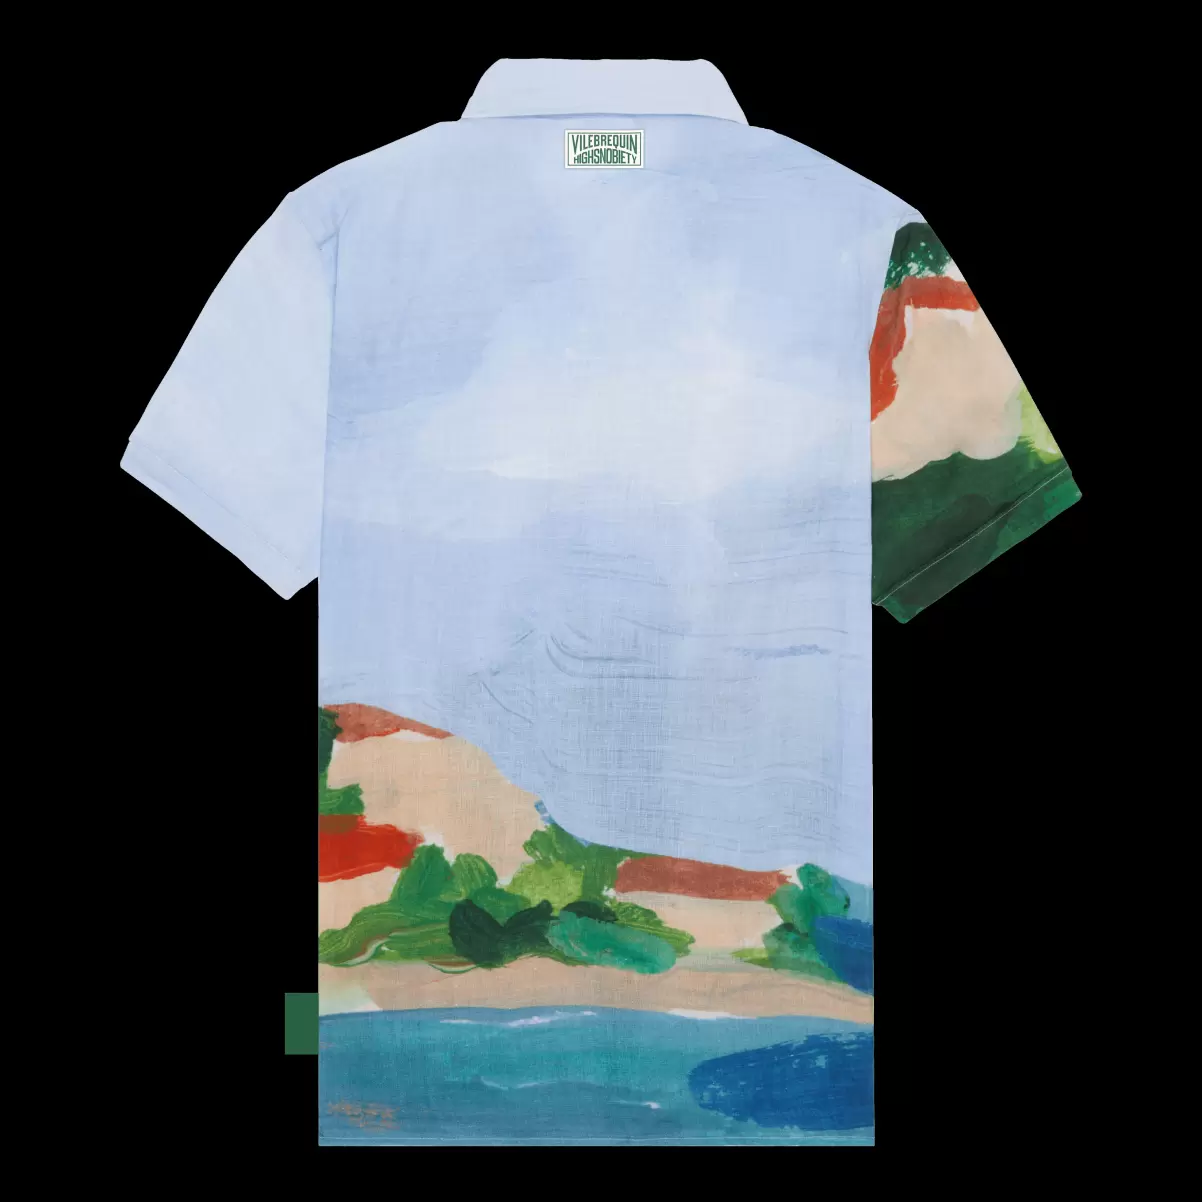 Herren Shirts Beschaffung Chambray / Blau 360 Landscape Bowling-Hemd Aus Leinen Für Herren – Vilebrequin X Highsnobiety - 4